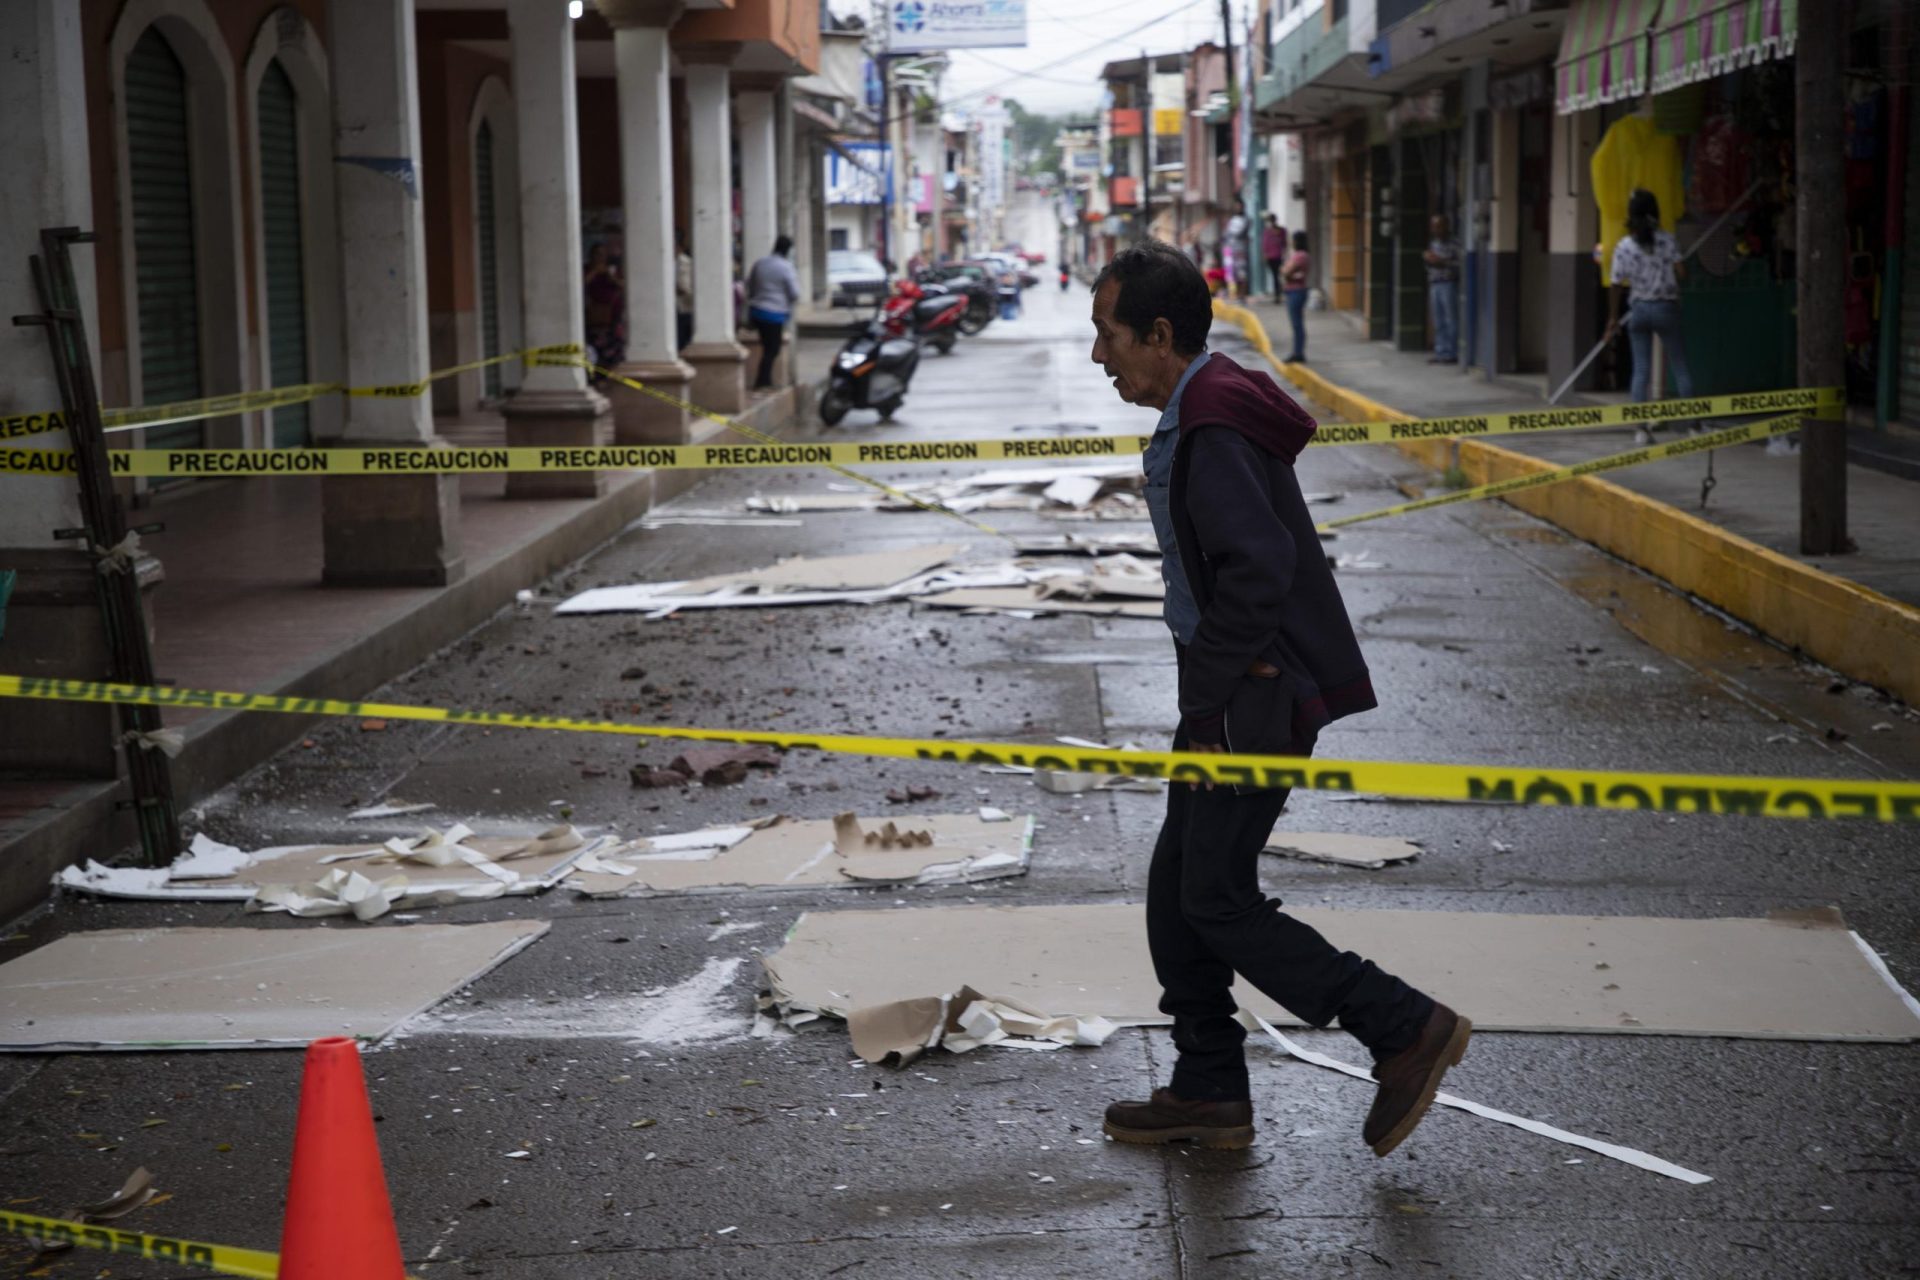 La coincidencia del terremoto en México genera ansiedad en muchos